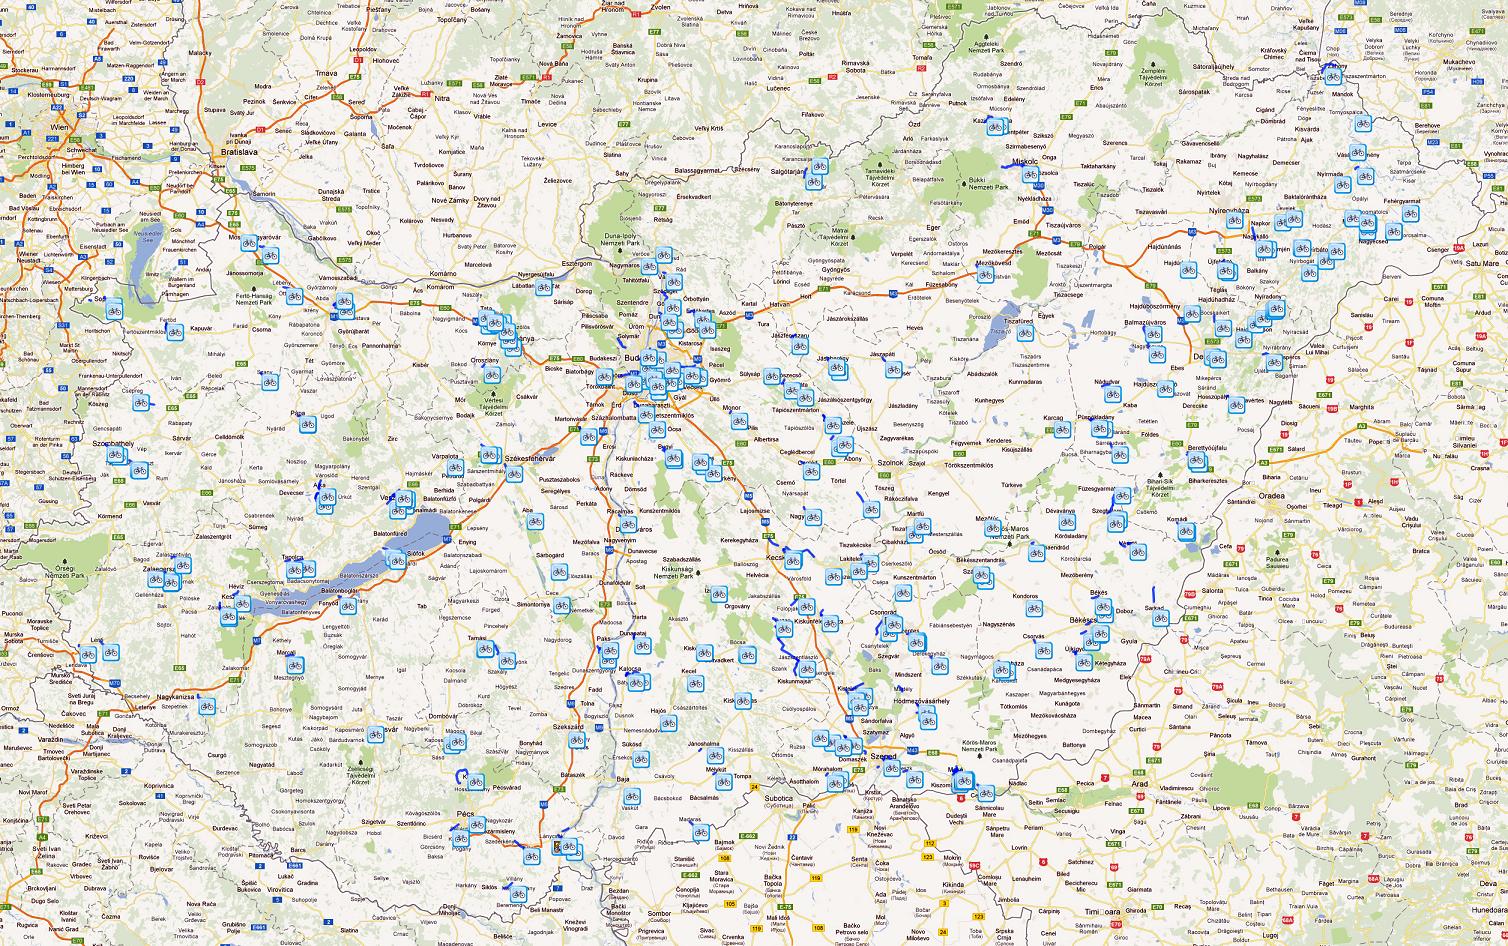 magyarország kerékpáros térkép Magyarország kerékpáros térképe   Biciklopédia magyarország kerékpáros térkép